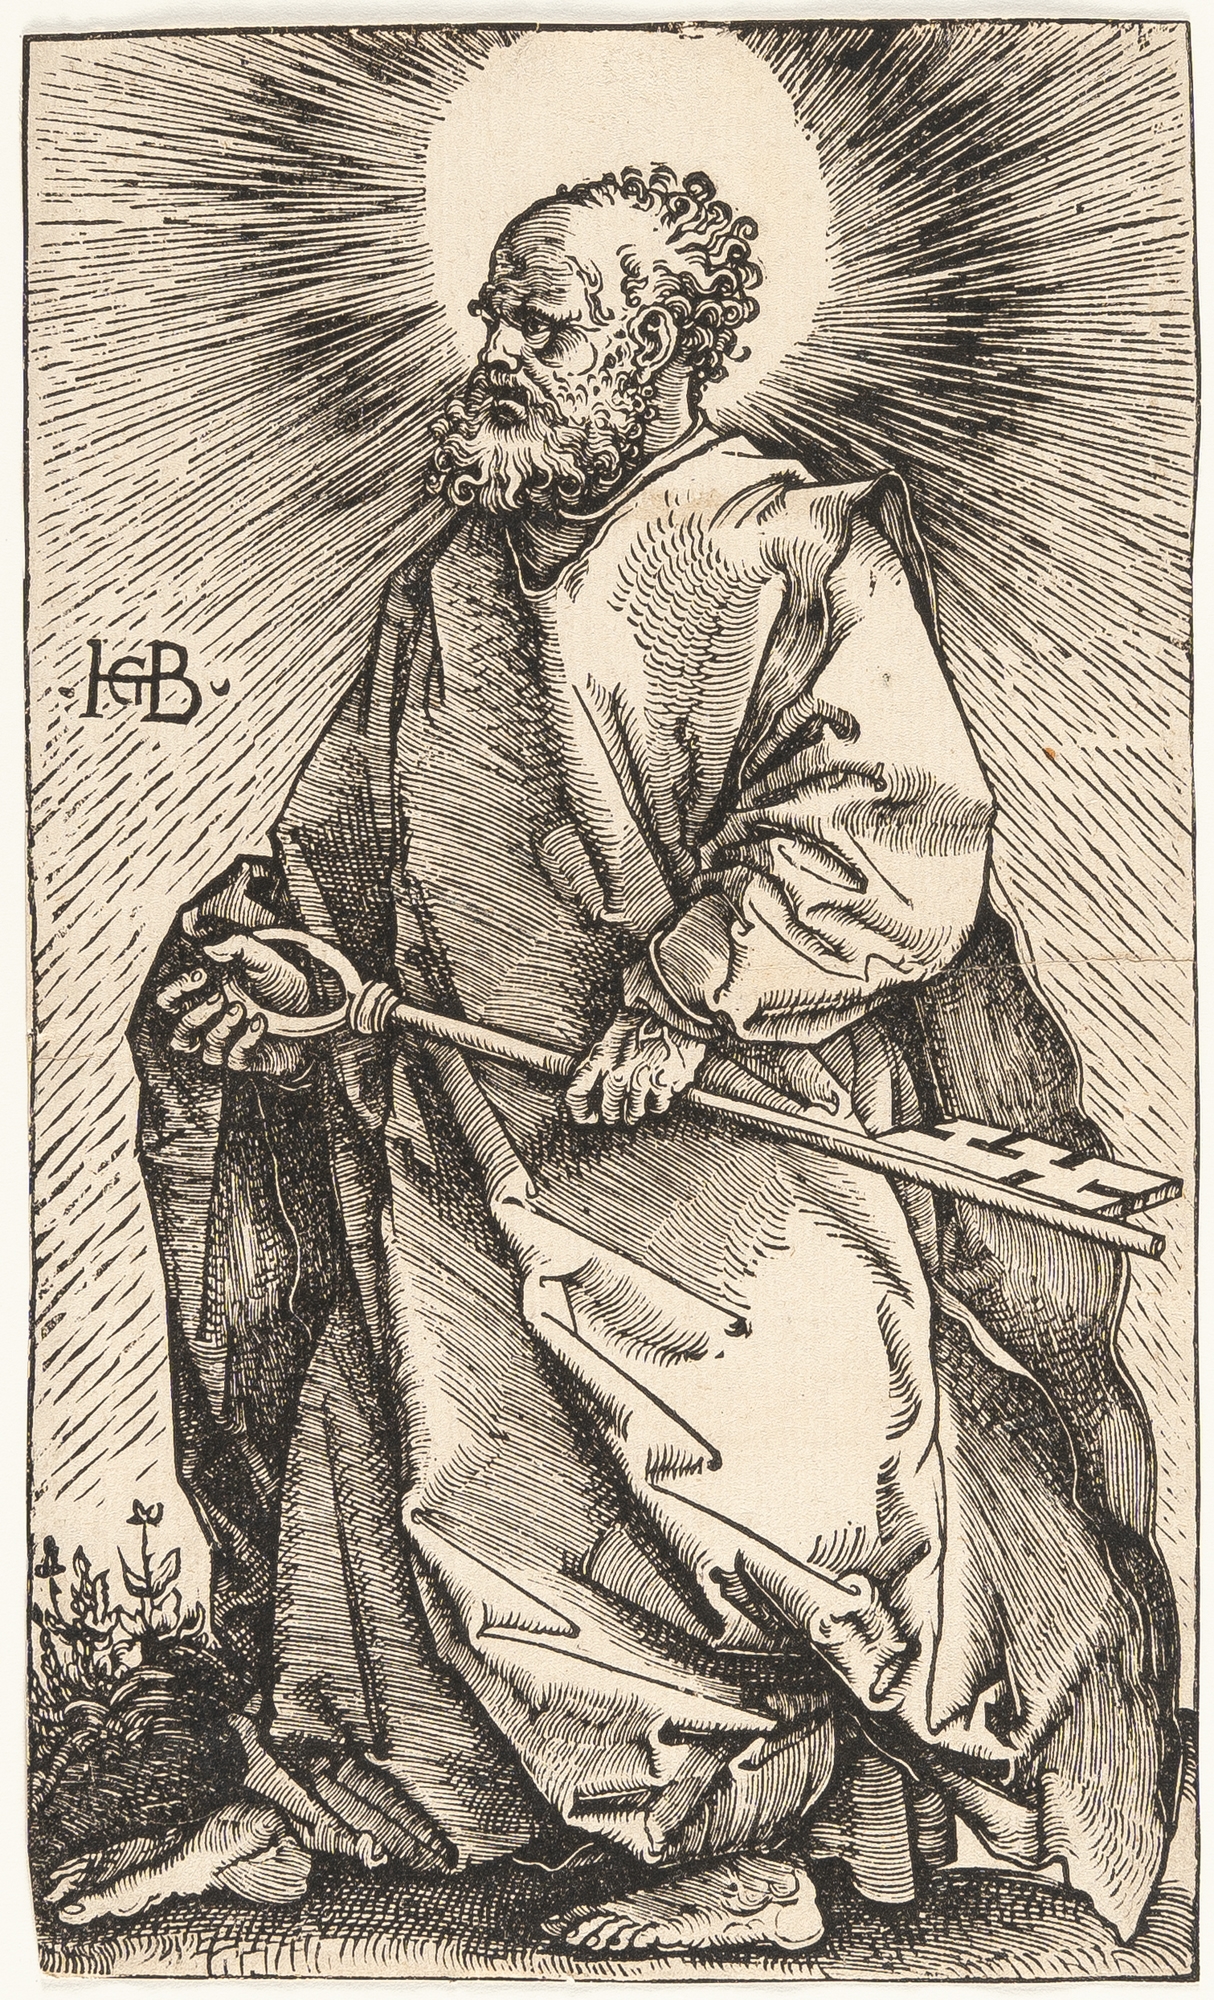 St. Peter by Hans Baldung Grien, 1519